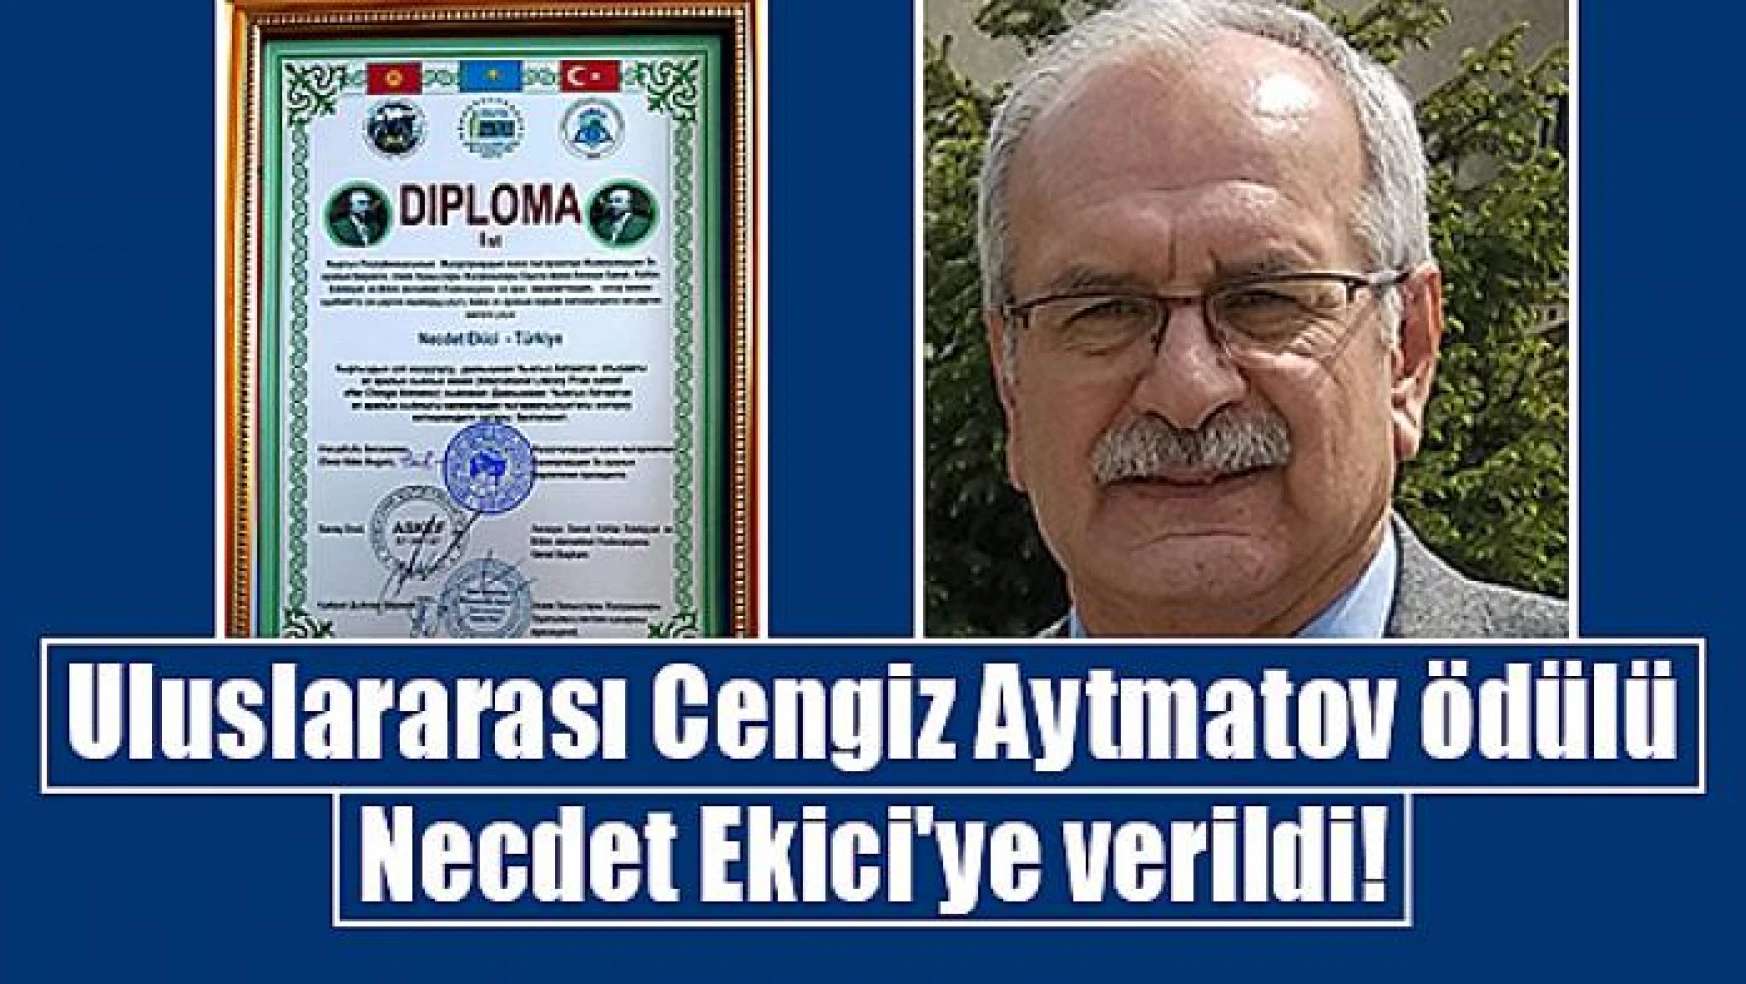 Uluslararası Cengiz Aytmatov Ödülü Necdet Ekici'ye verildi!